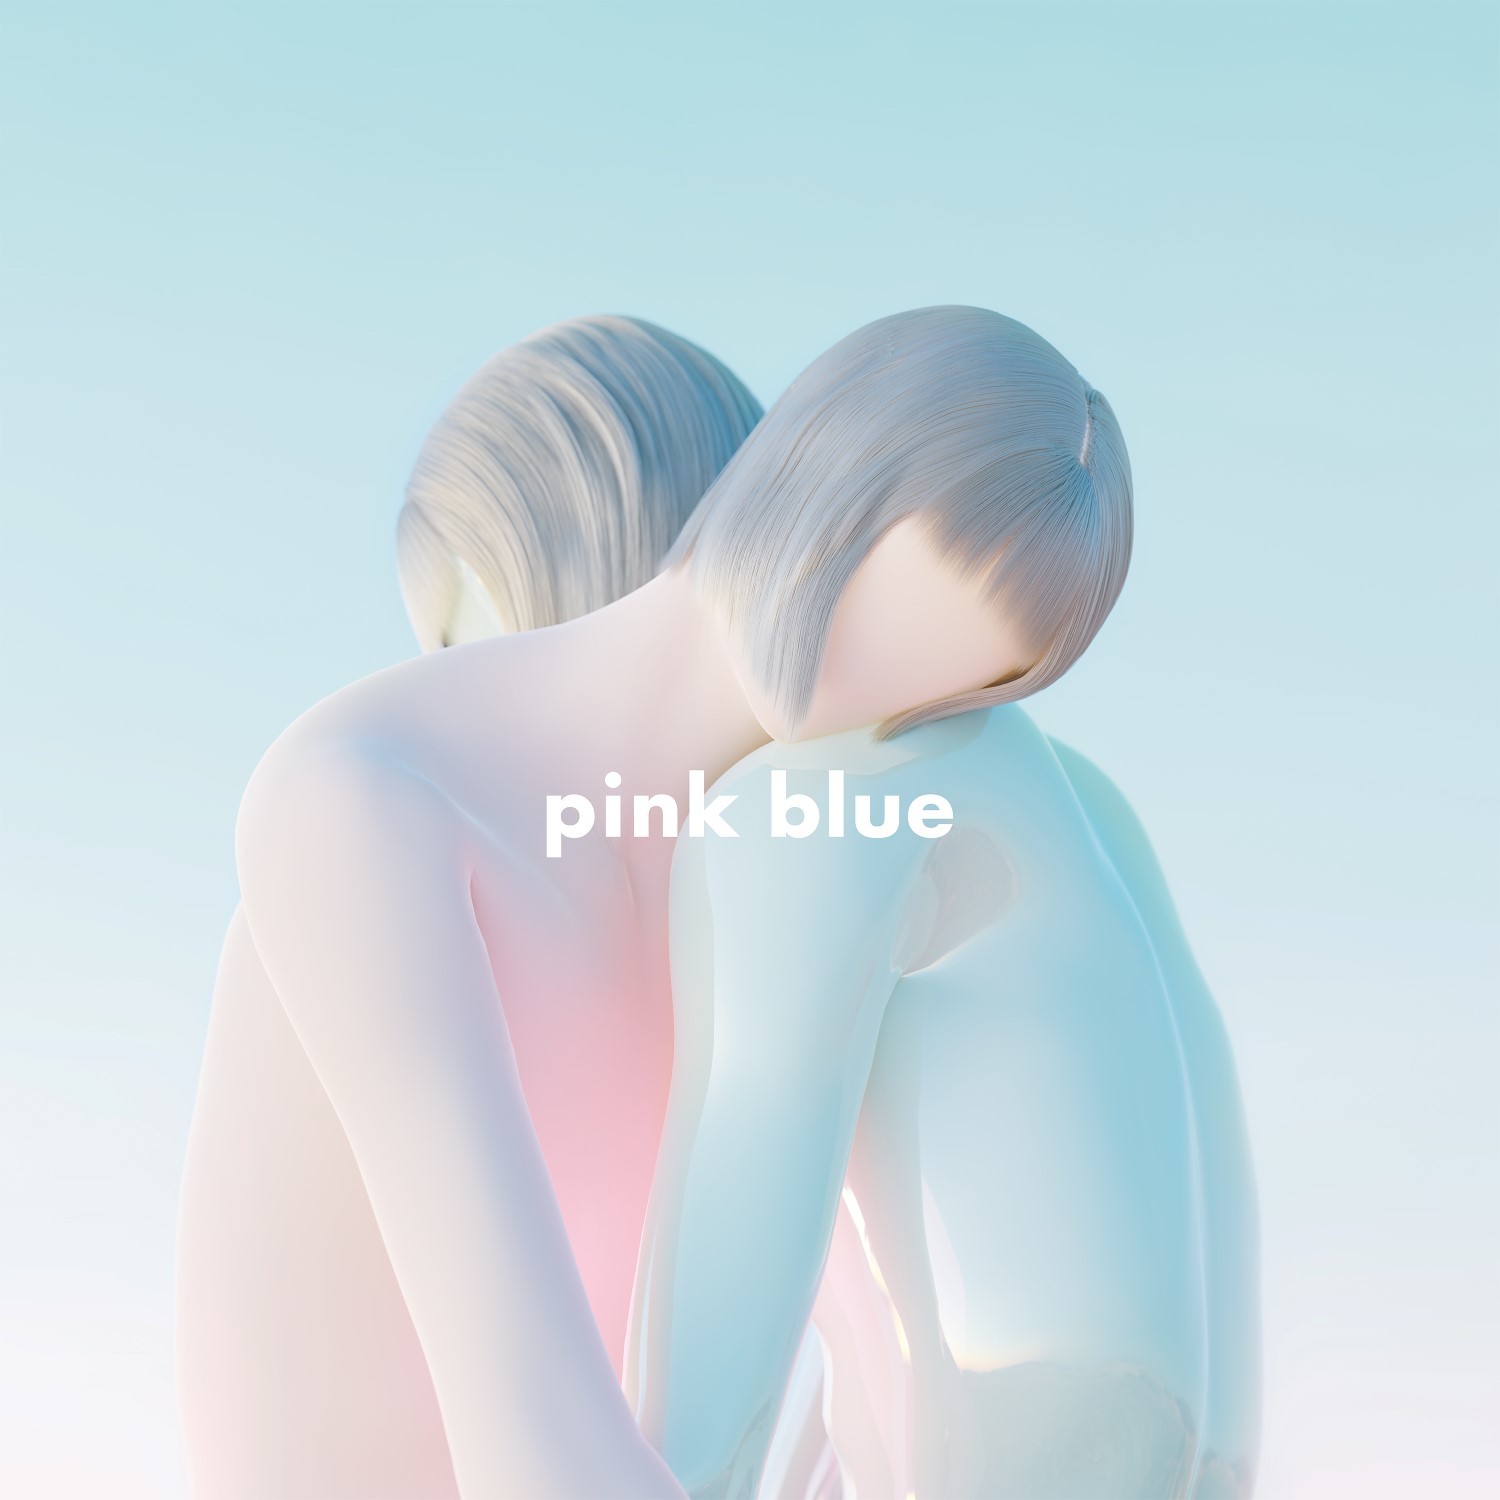 『pink blue』通常盤